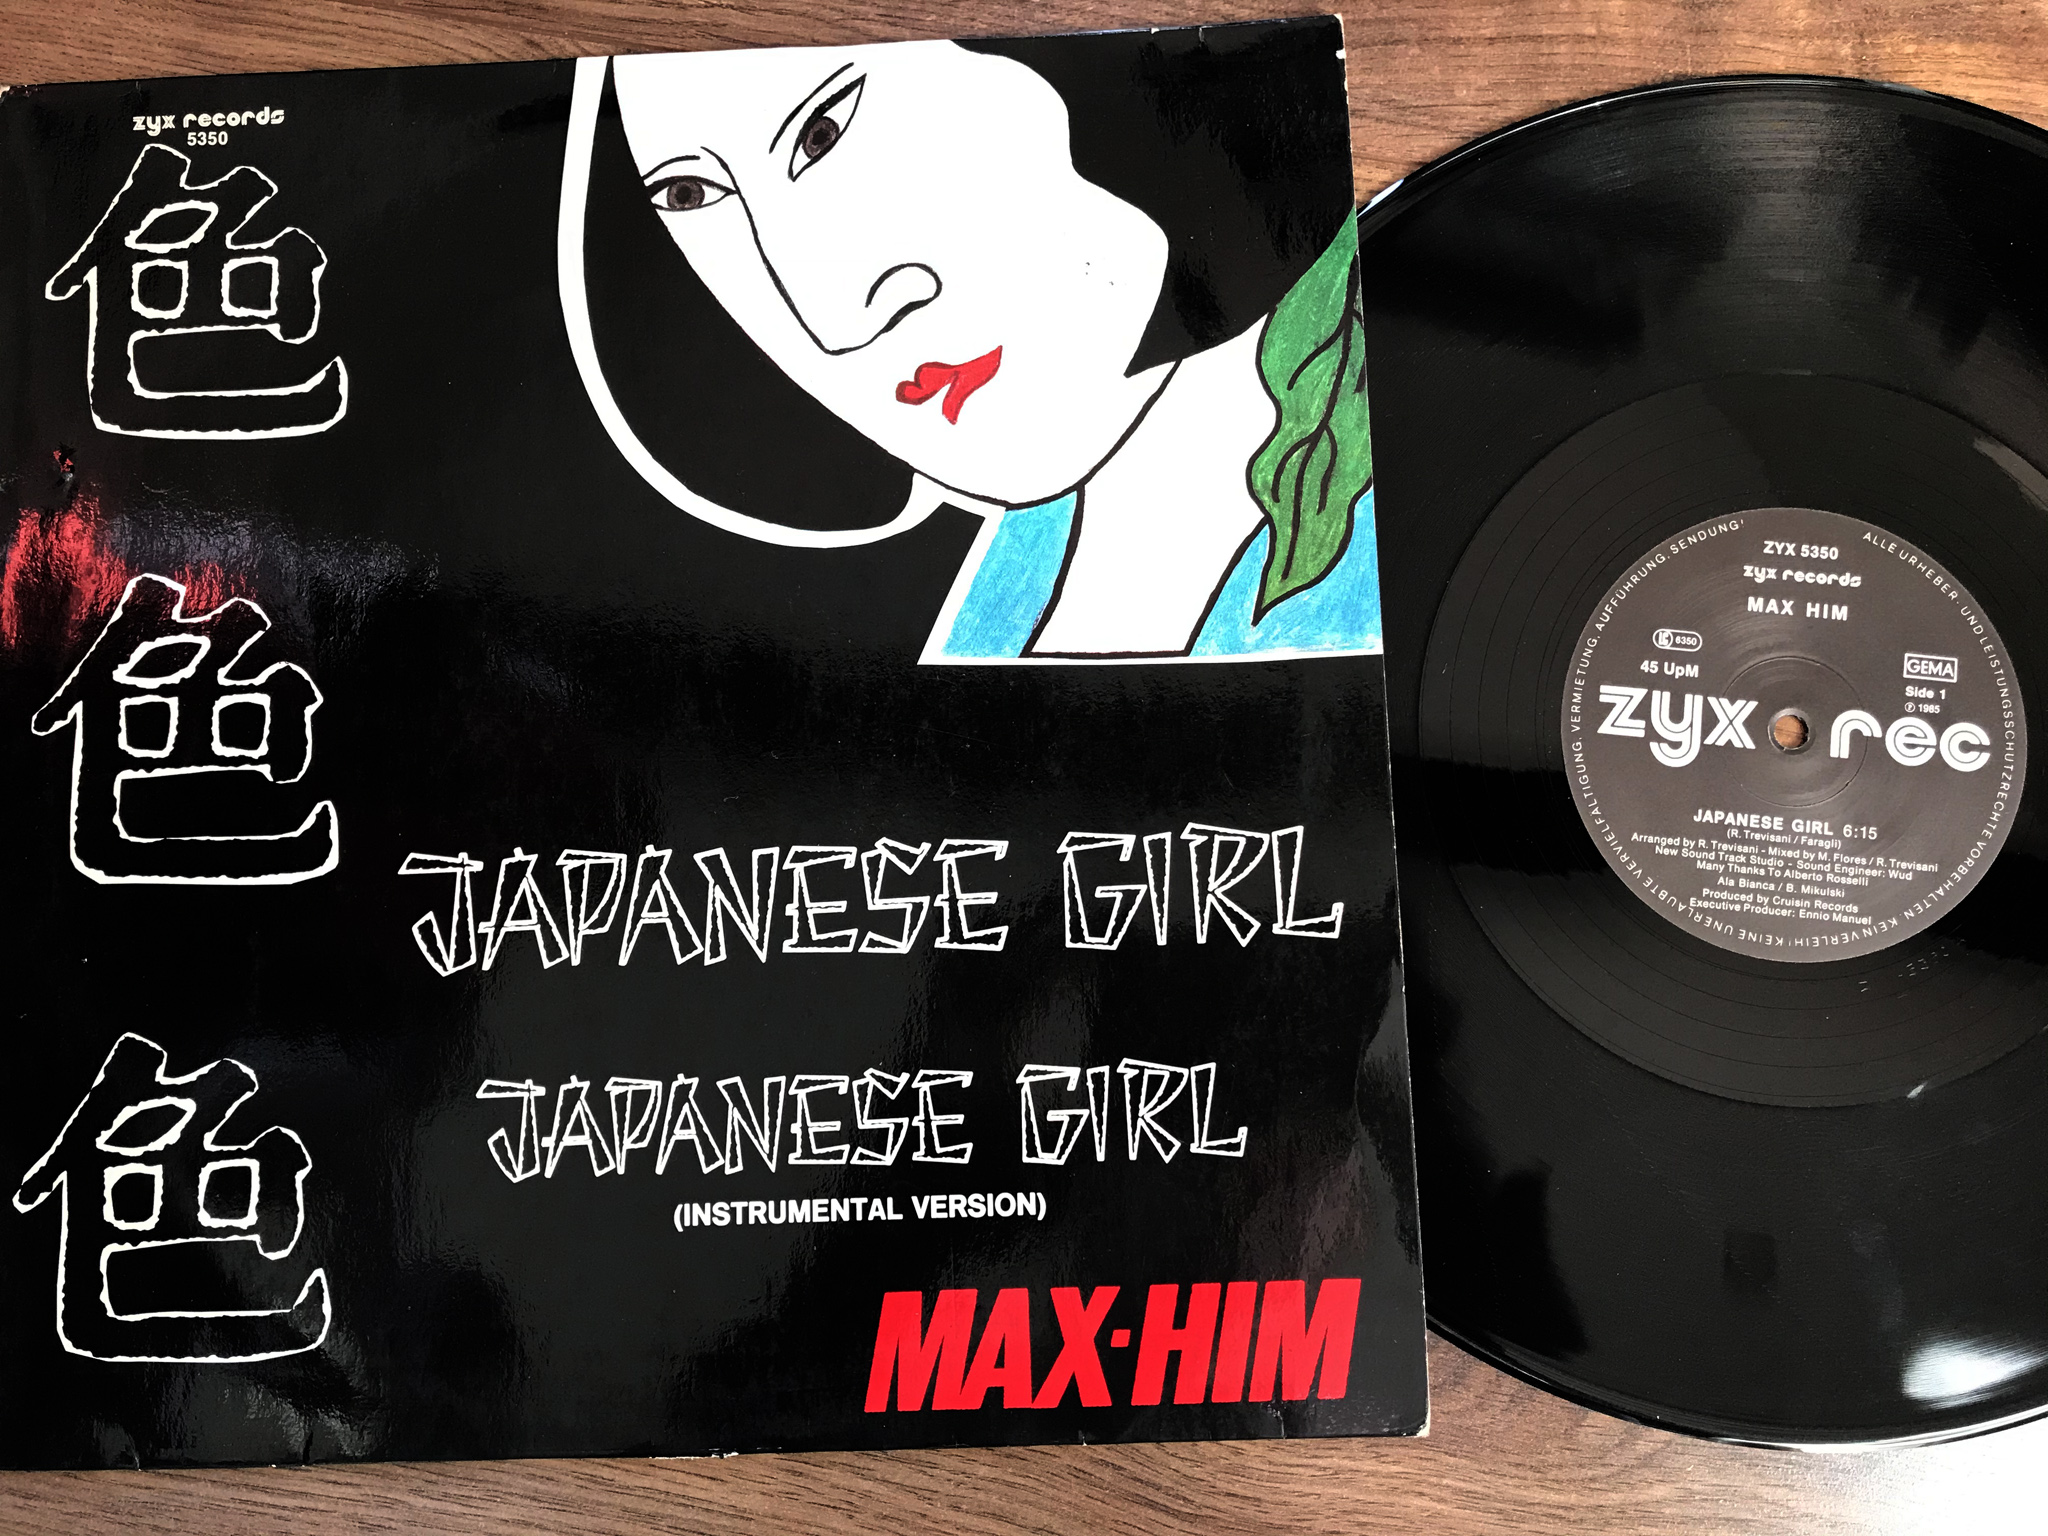 Max Him - Japanese girl